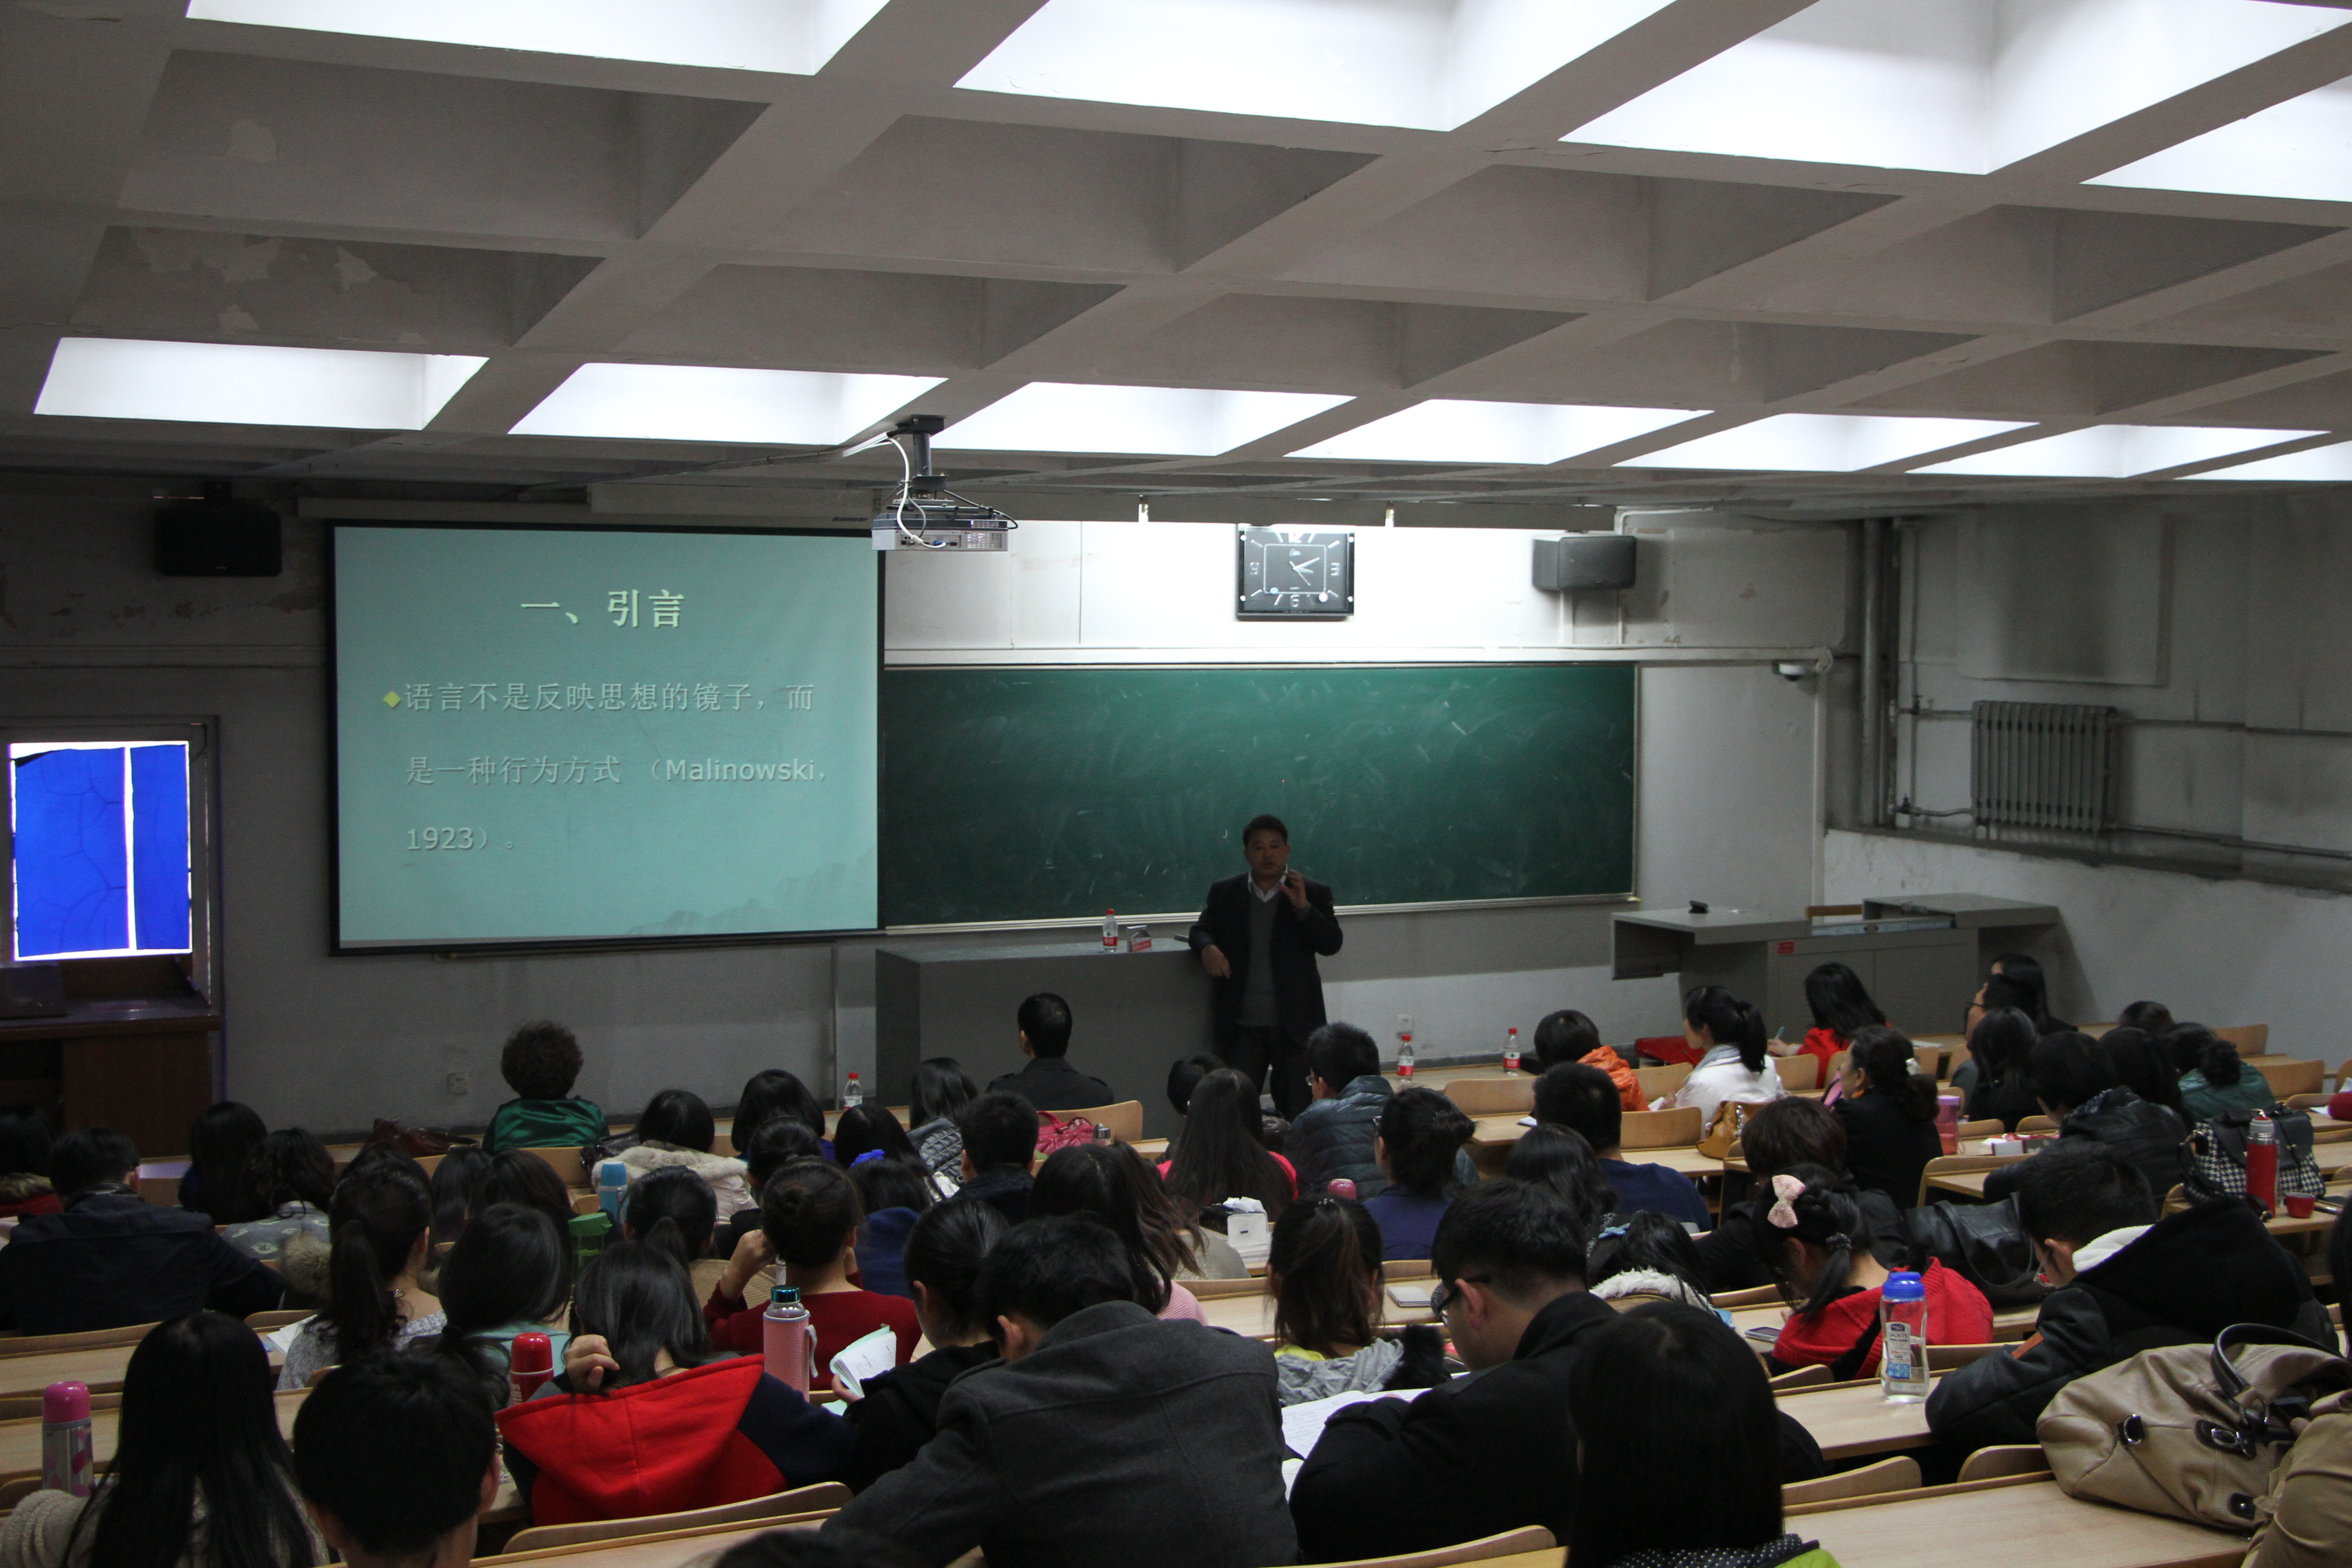            北京师范大学、华东师范大学等高校外语专家来我校进行学术交流 